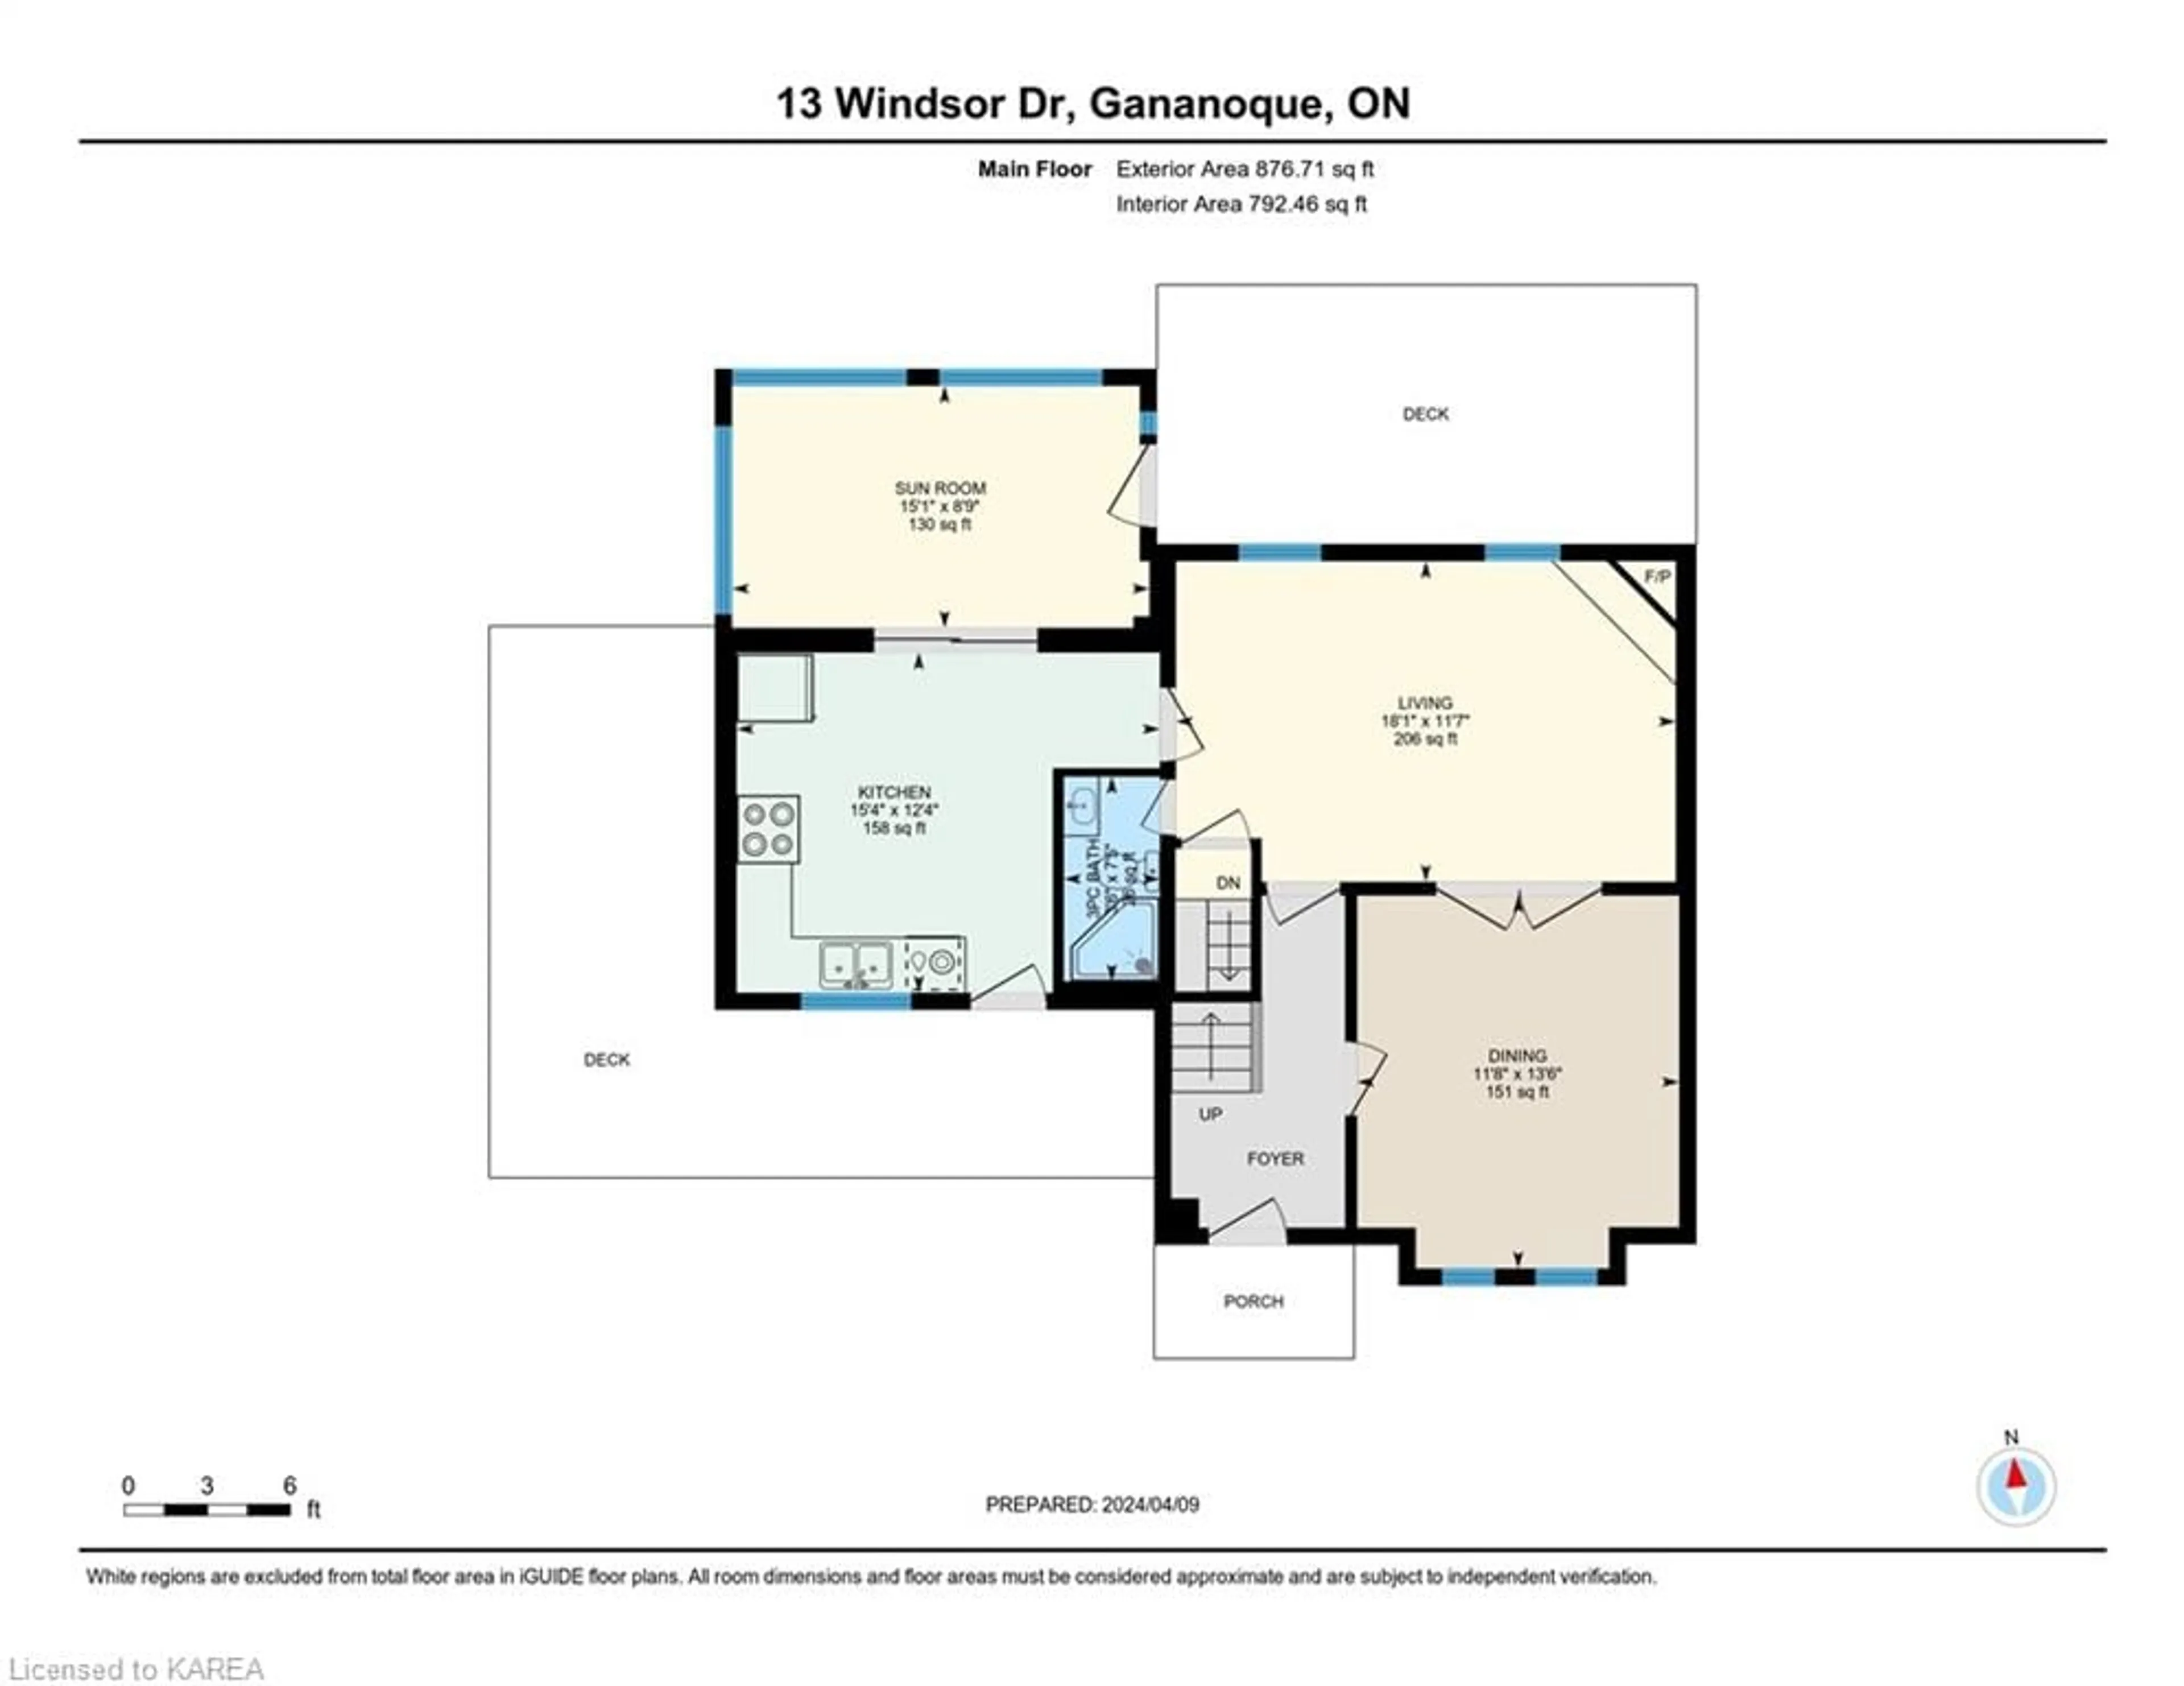 Floor plan for 13 Windsor Dr, Gananoque Ontario K7G 2C9